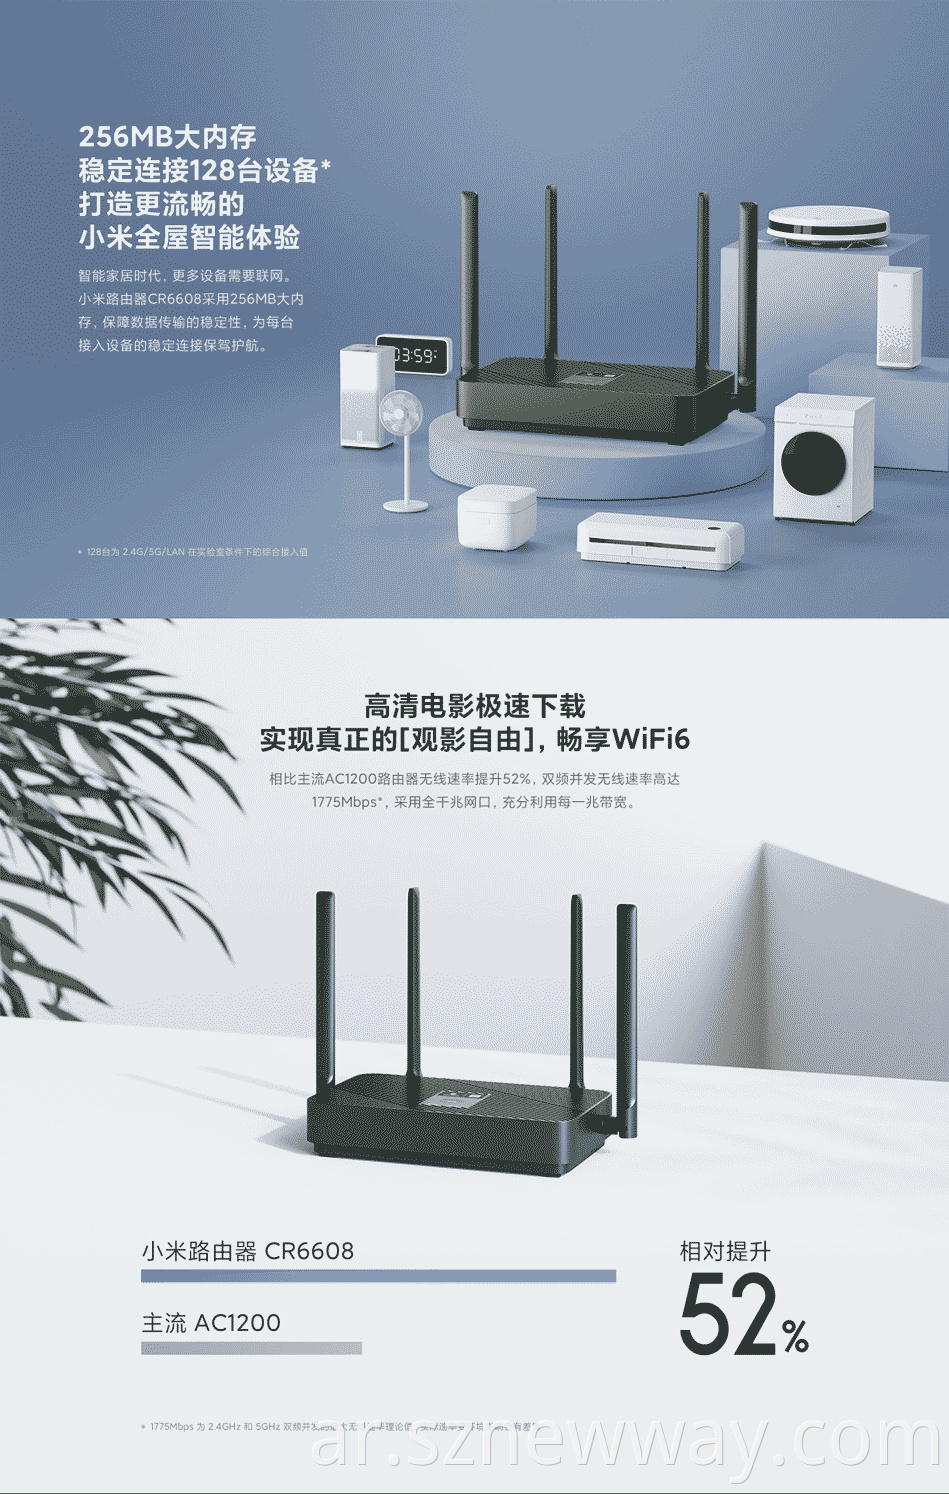 Xiao Mi Router Cr6608